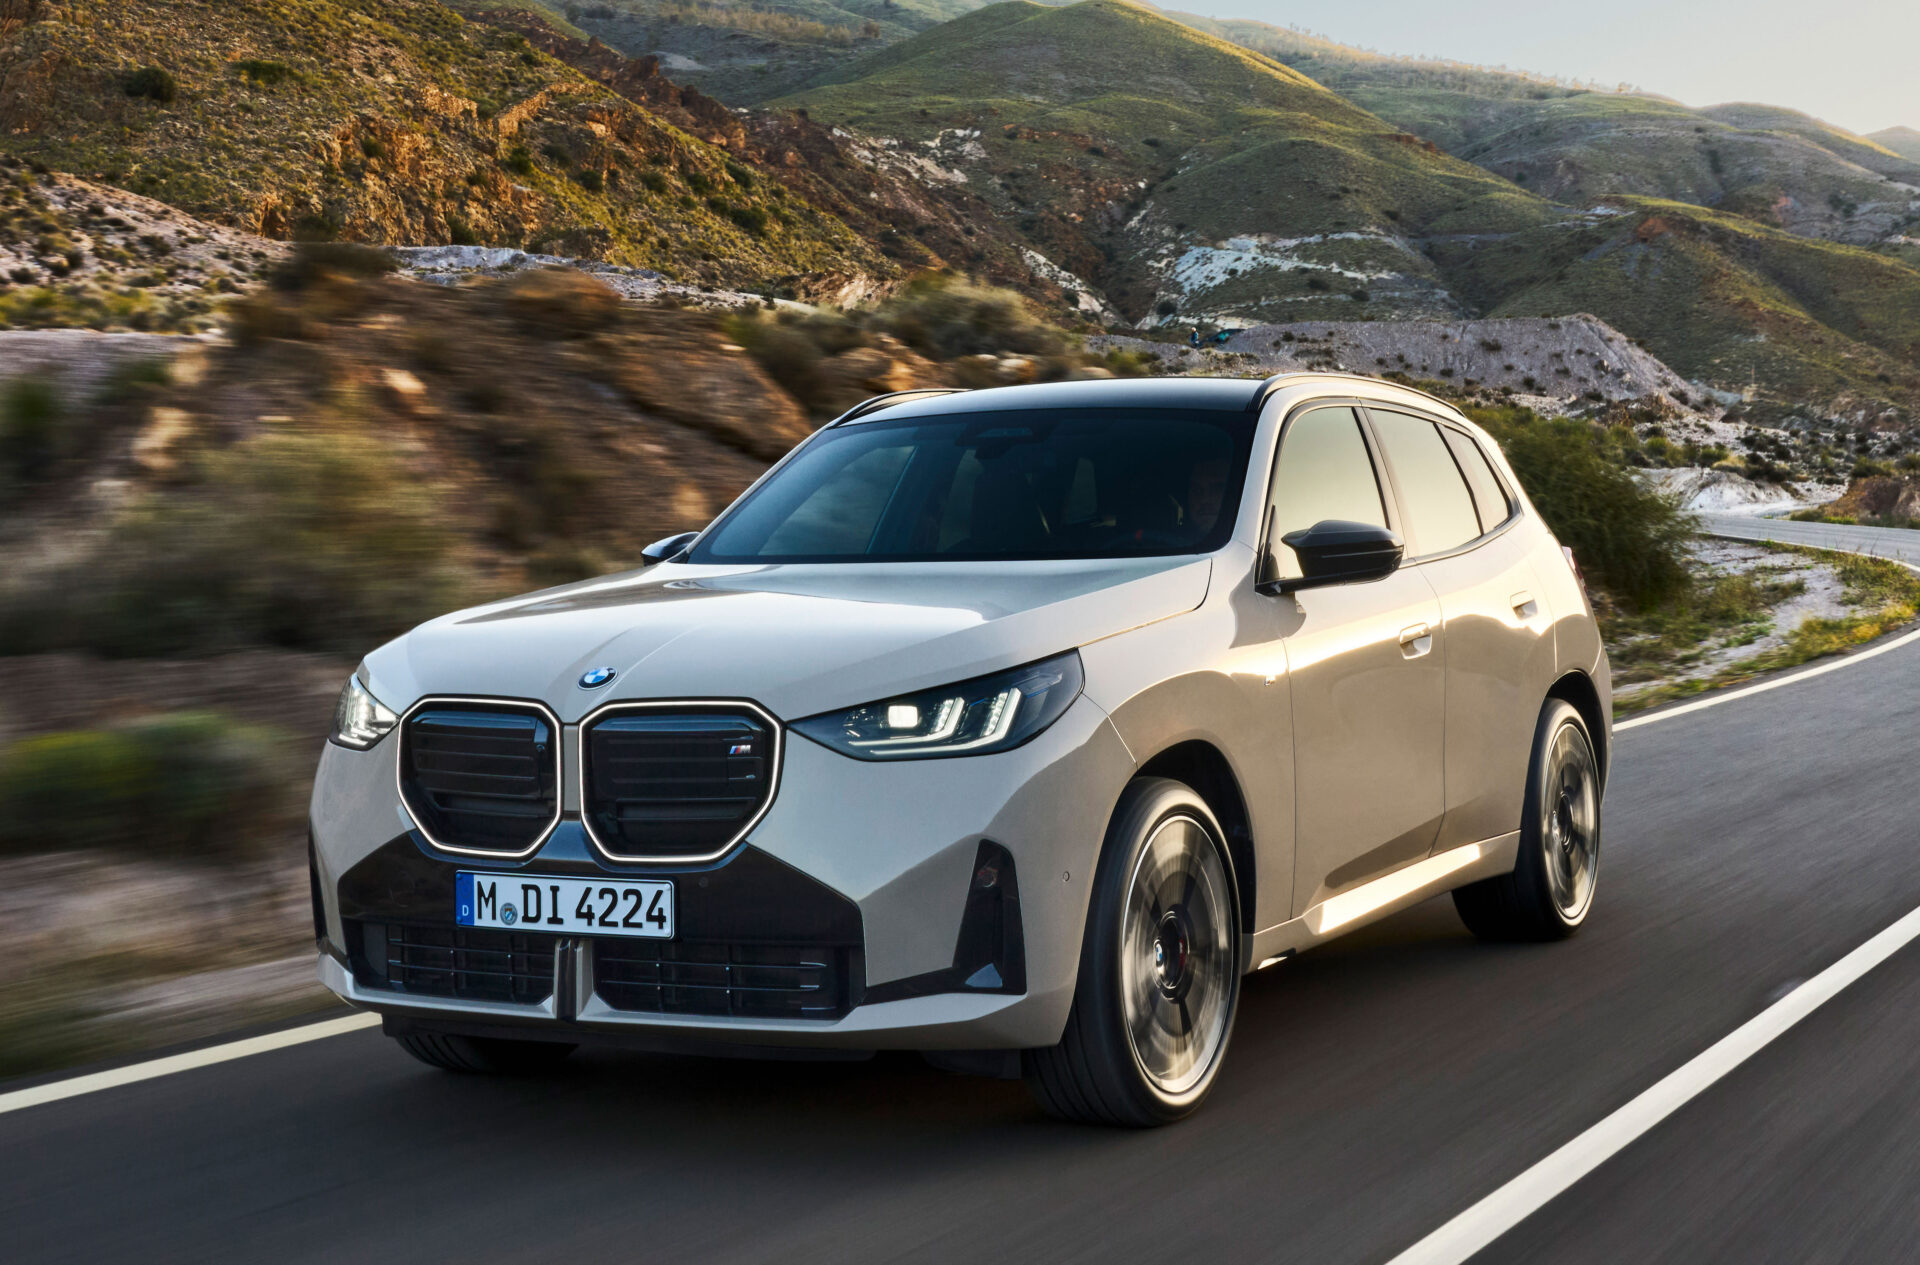 BMWが新型X3を発表。その路線は大きく変わって「クリーンな未来志向」へ、将来のBMWを示唆する要素が内外装に多数盛り込まれる